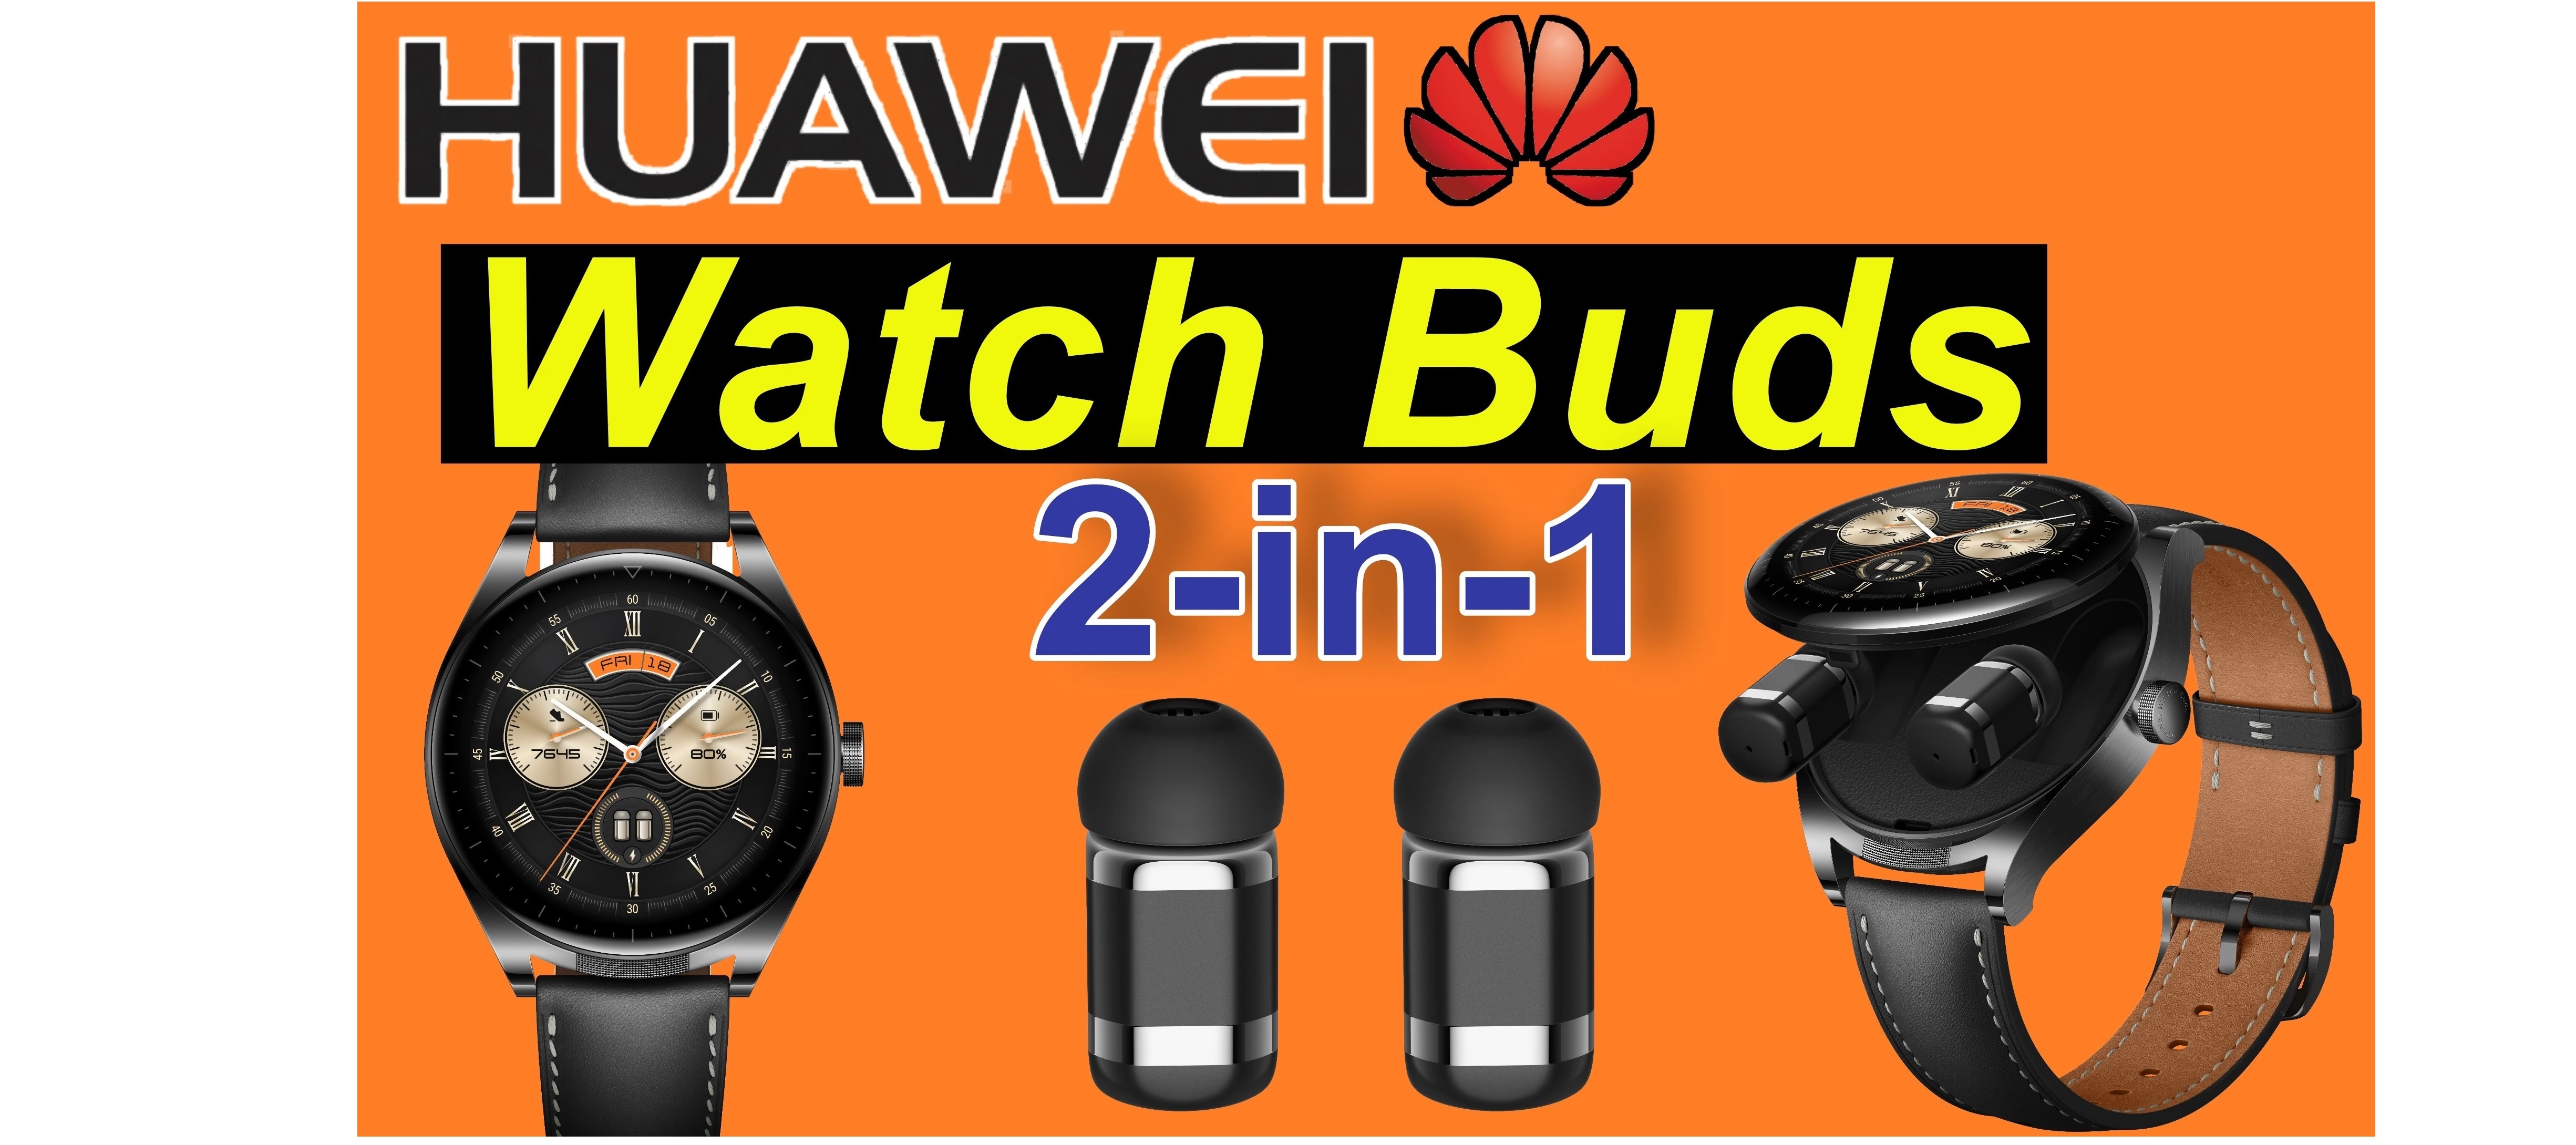 Huawei Watch Buds - Smartwatch und Earbuds, 2-in-1